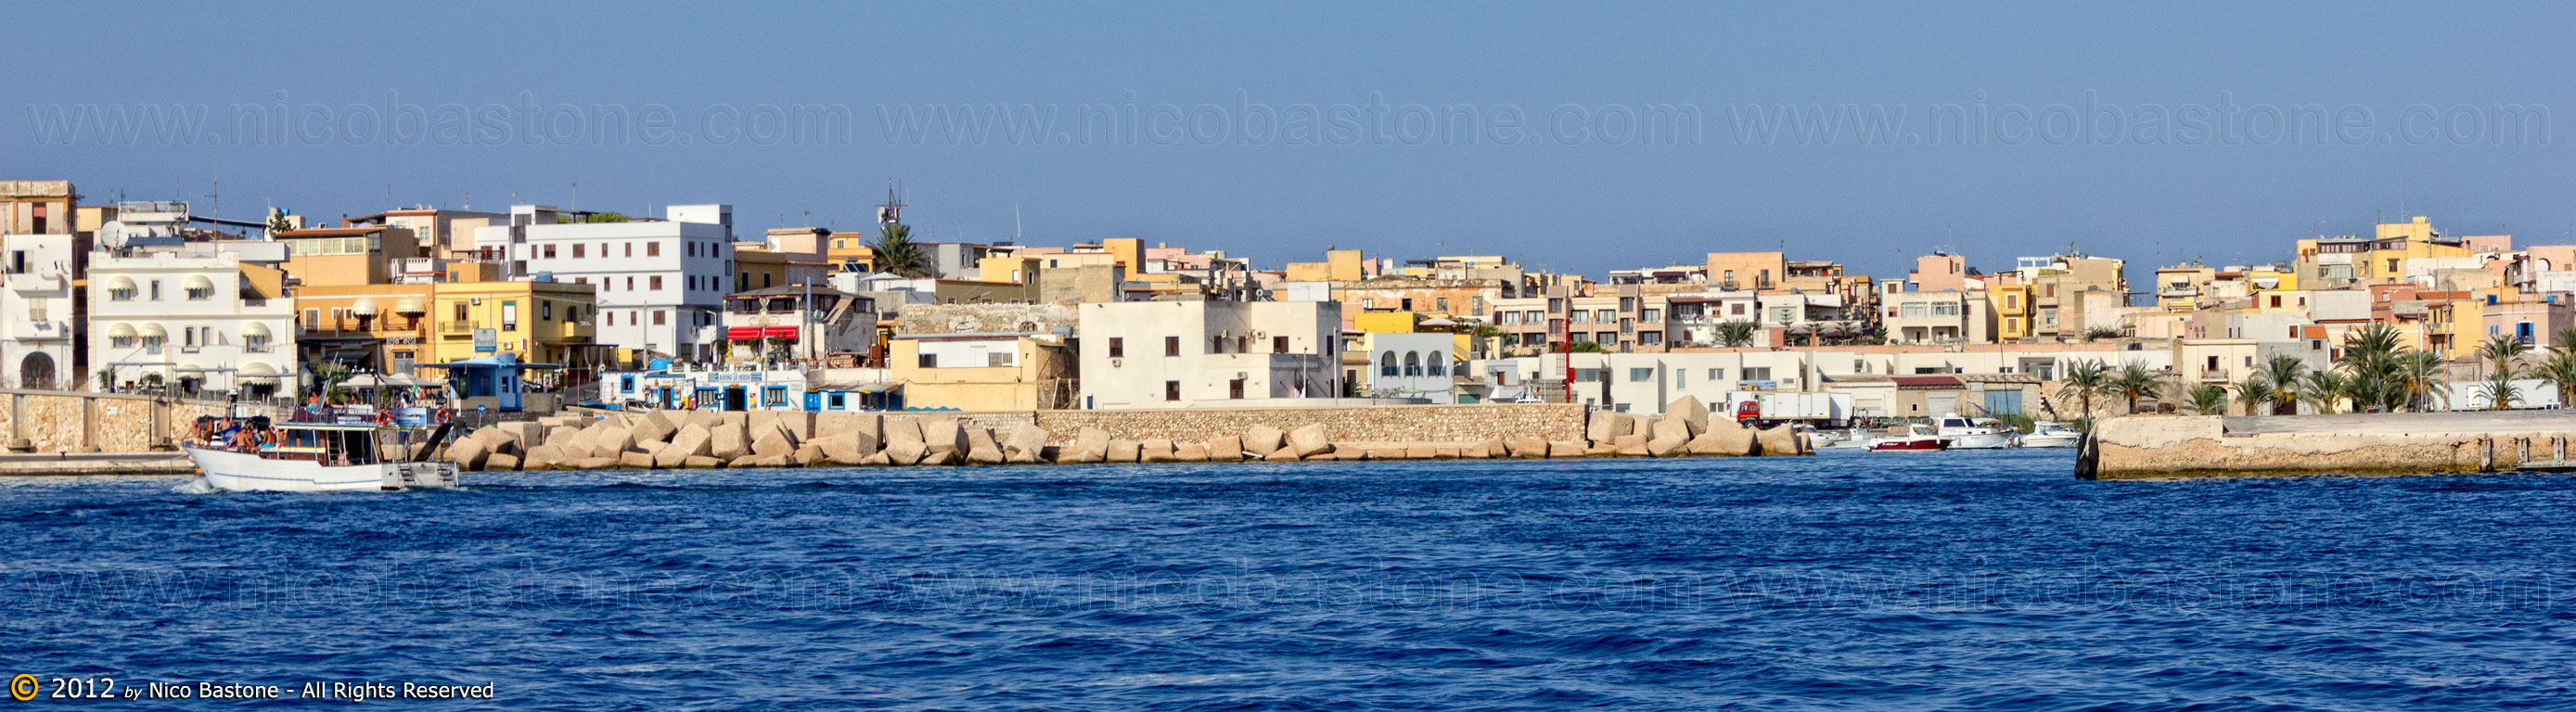 Lampedusa-4943-Large.jpg